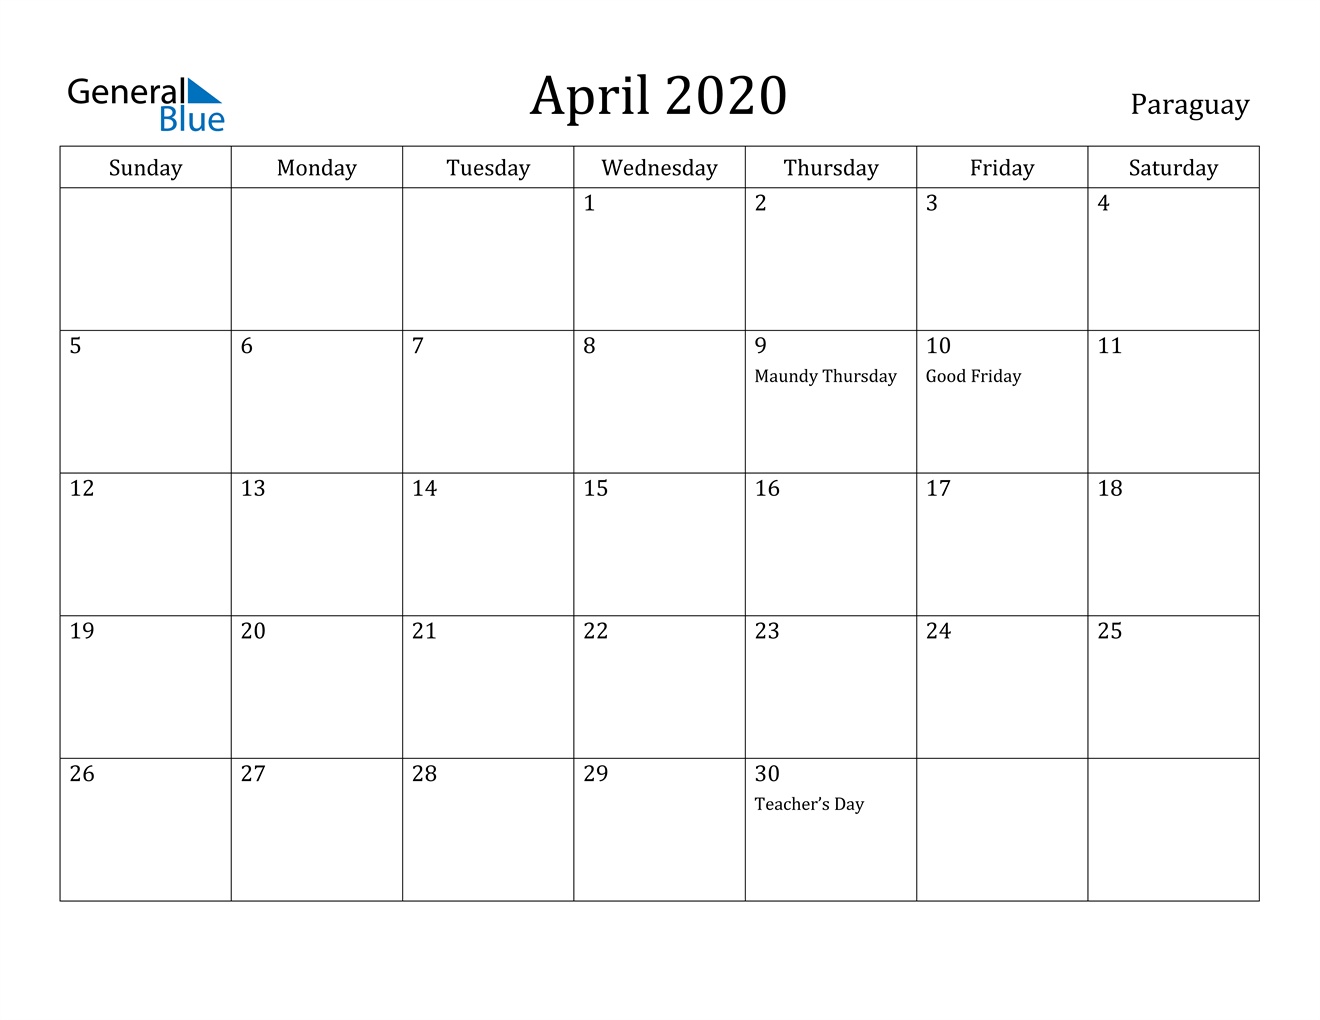 April 2020 Calendar - Paraguay